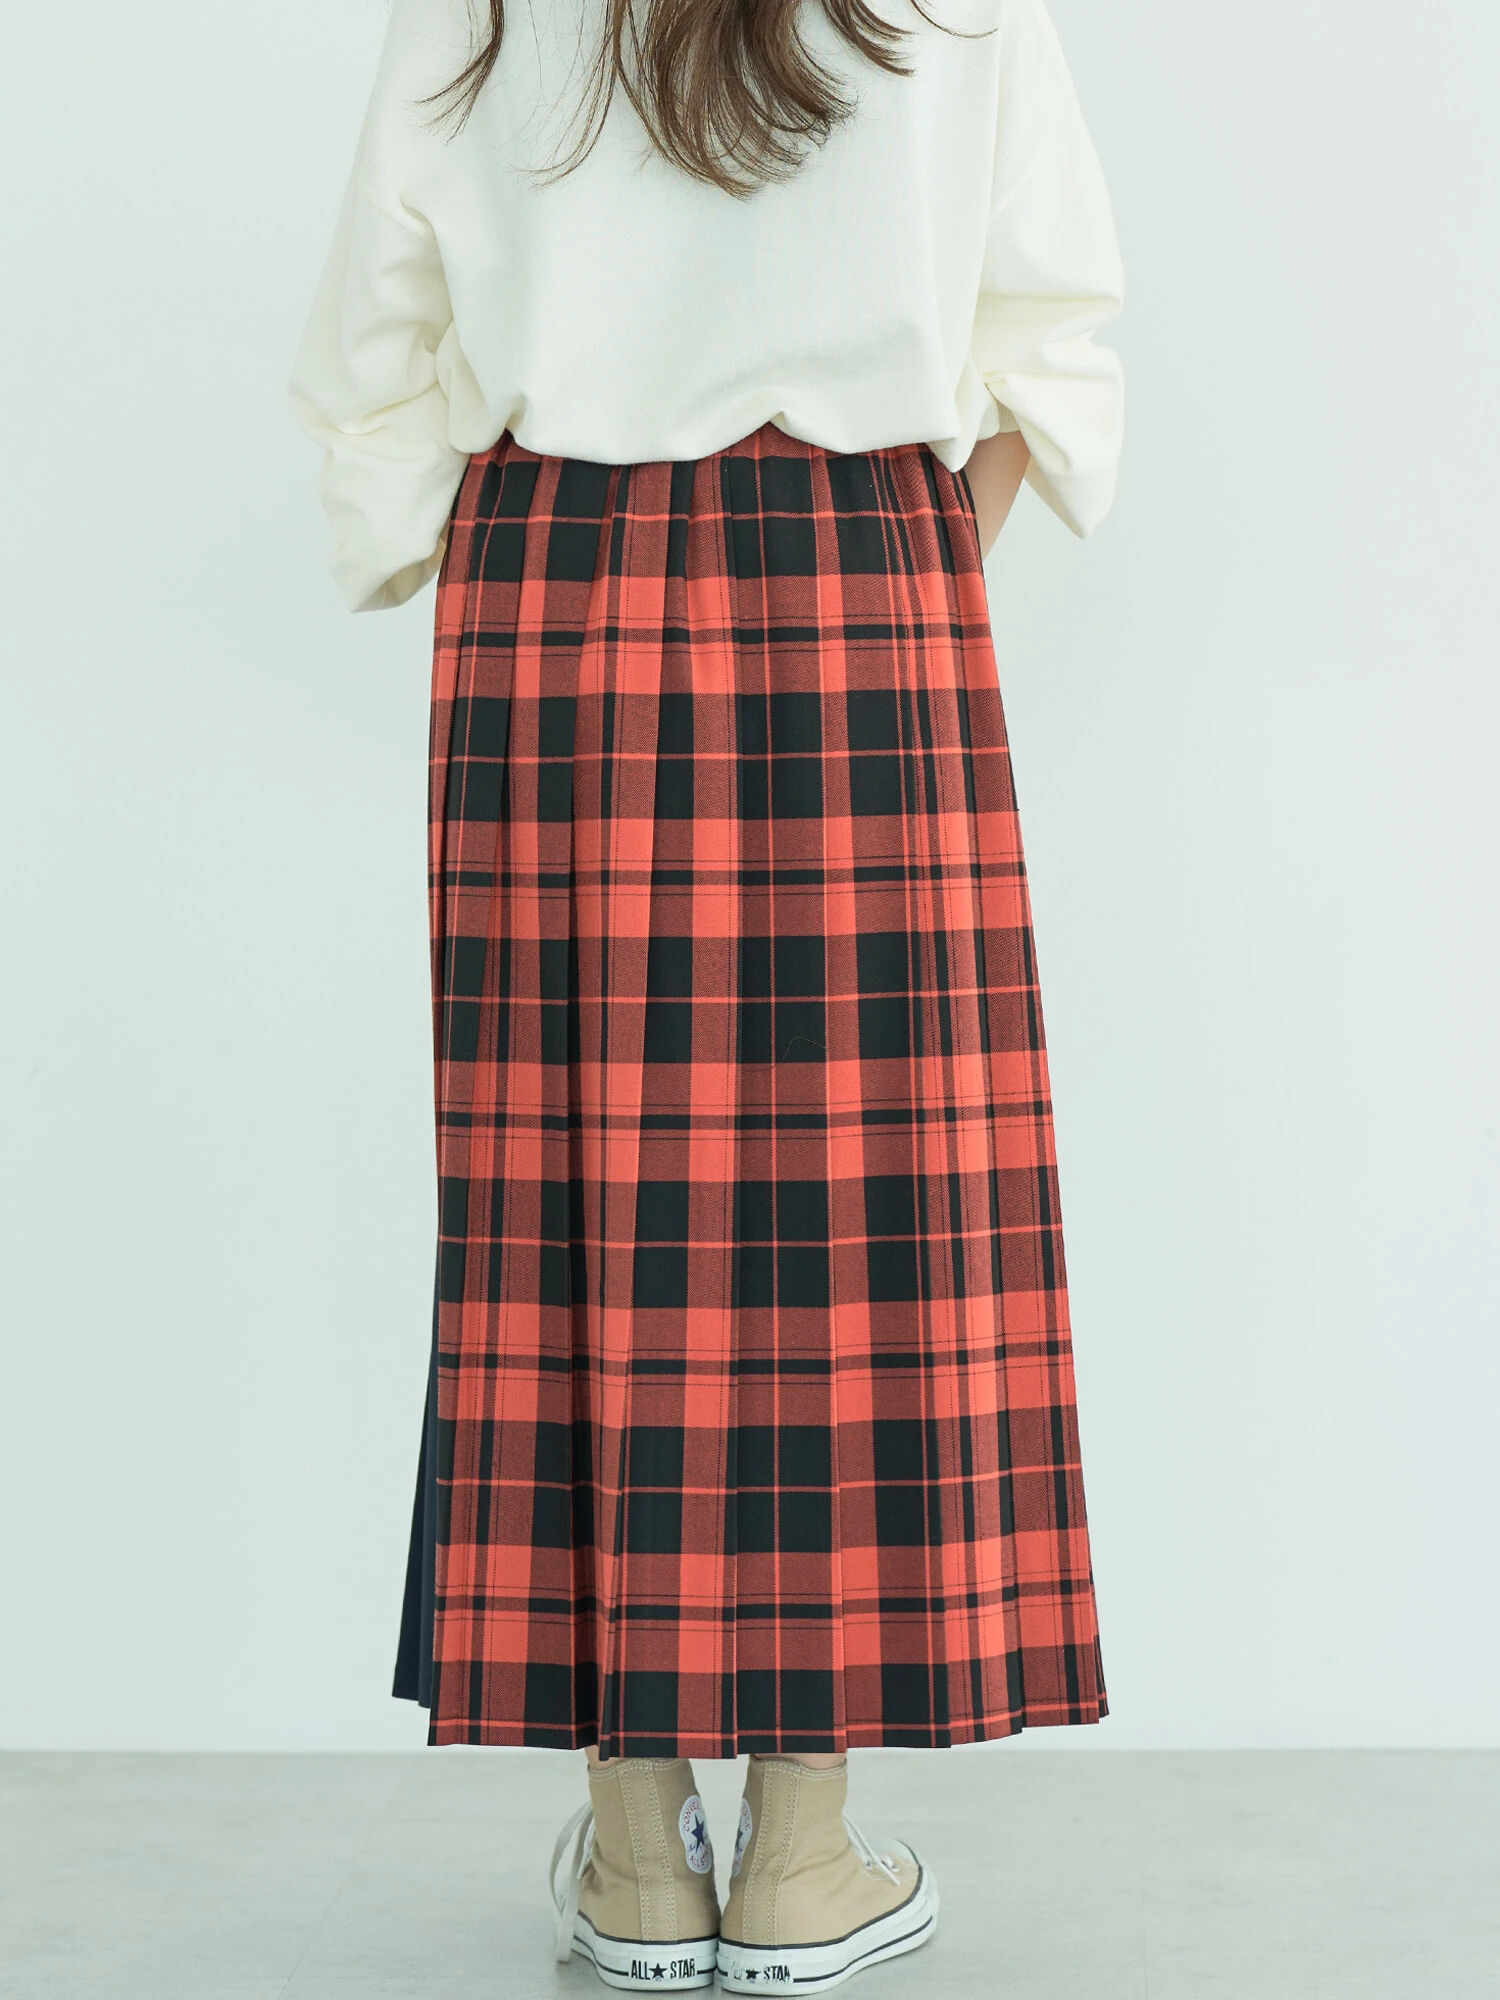 【WEB限定・小柄女性向け】アソートチェックプリーツスカート